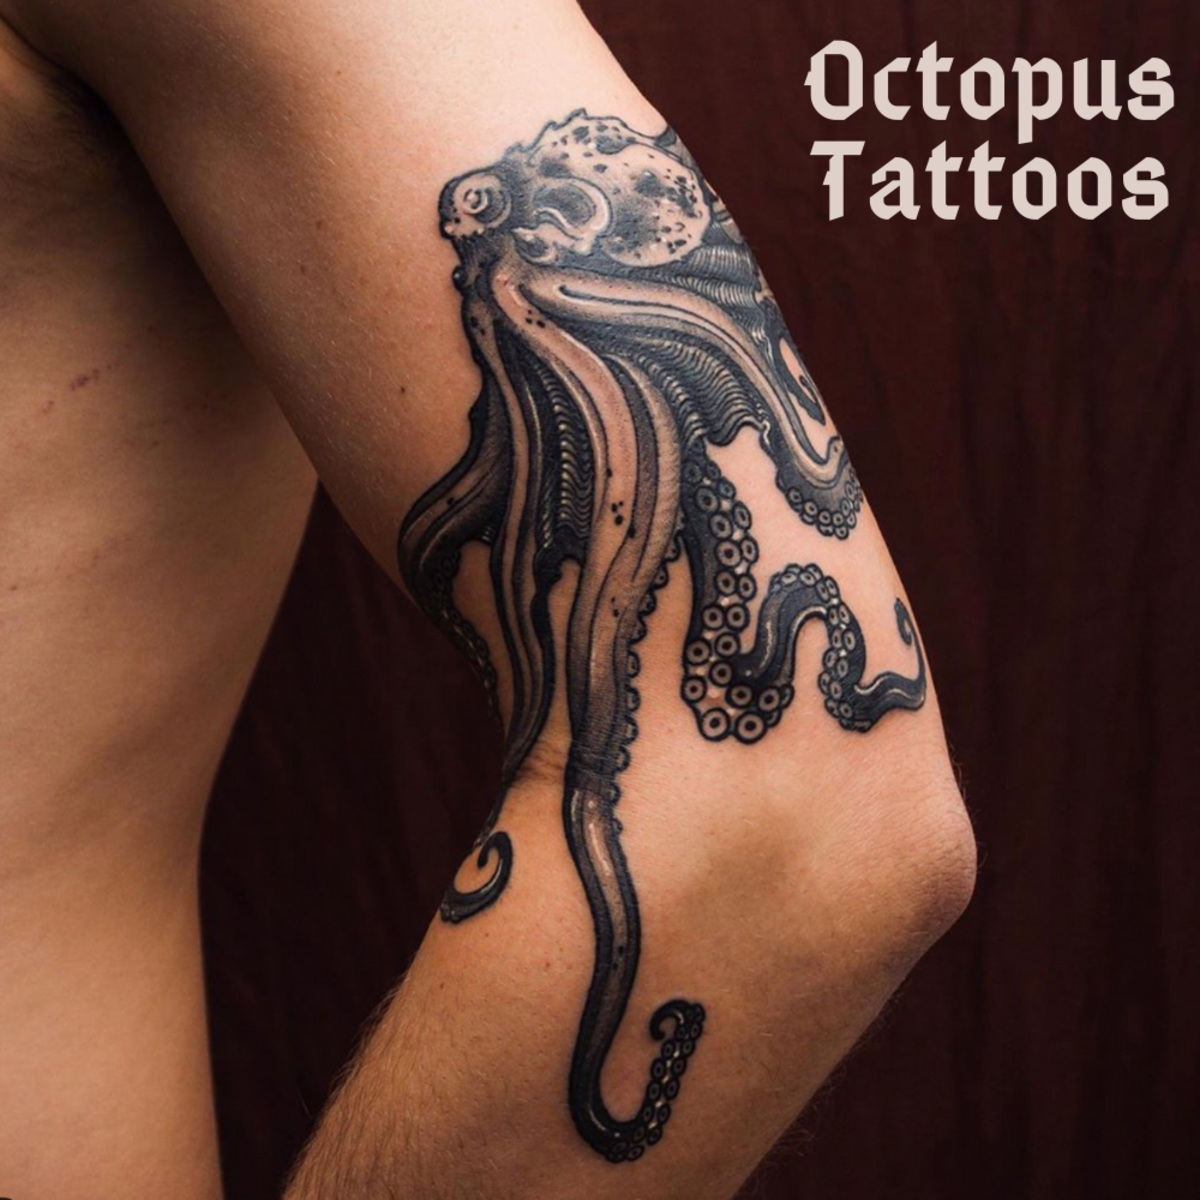 Mesés polip tetoválás Oleksandra Riabichko @oleksas.tattoos Németországban